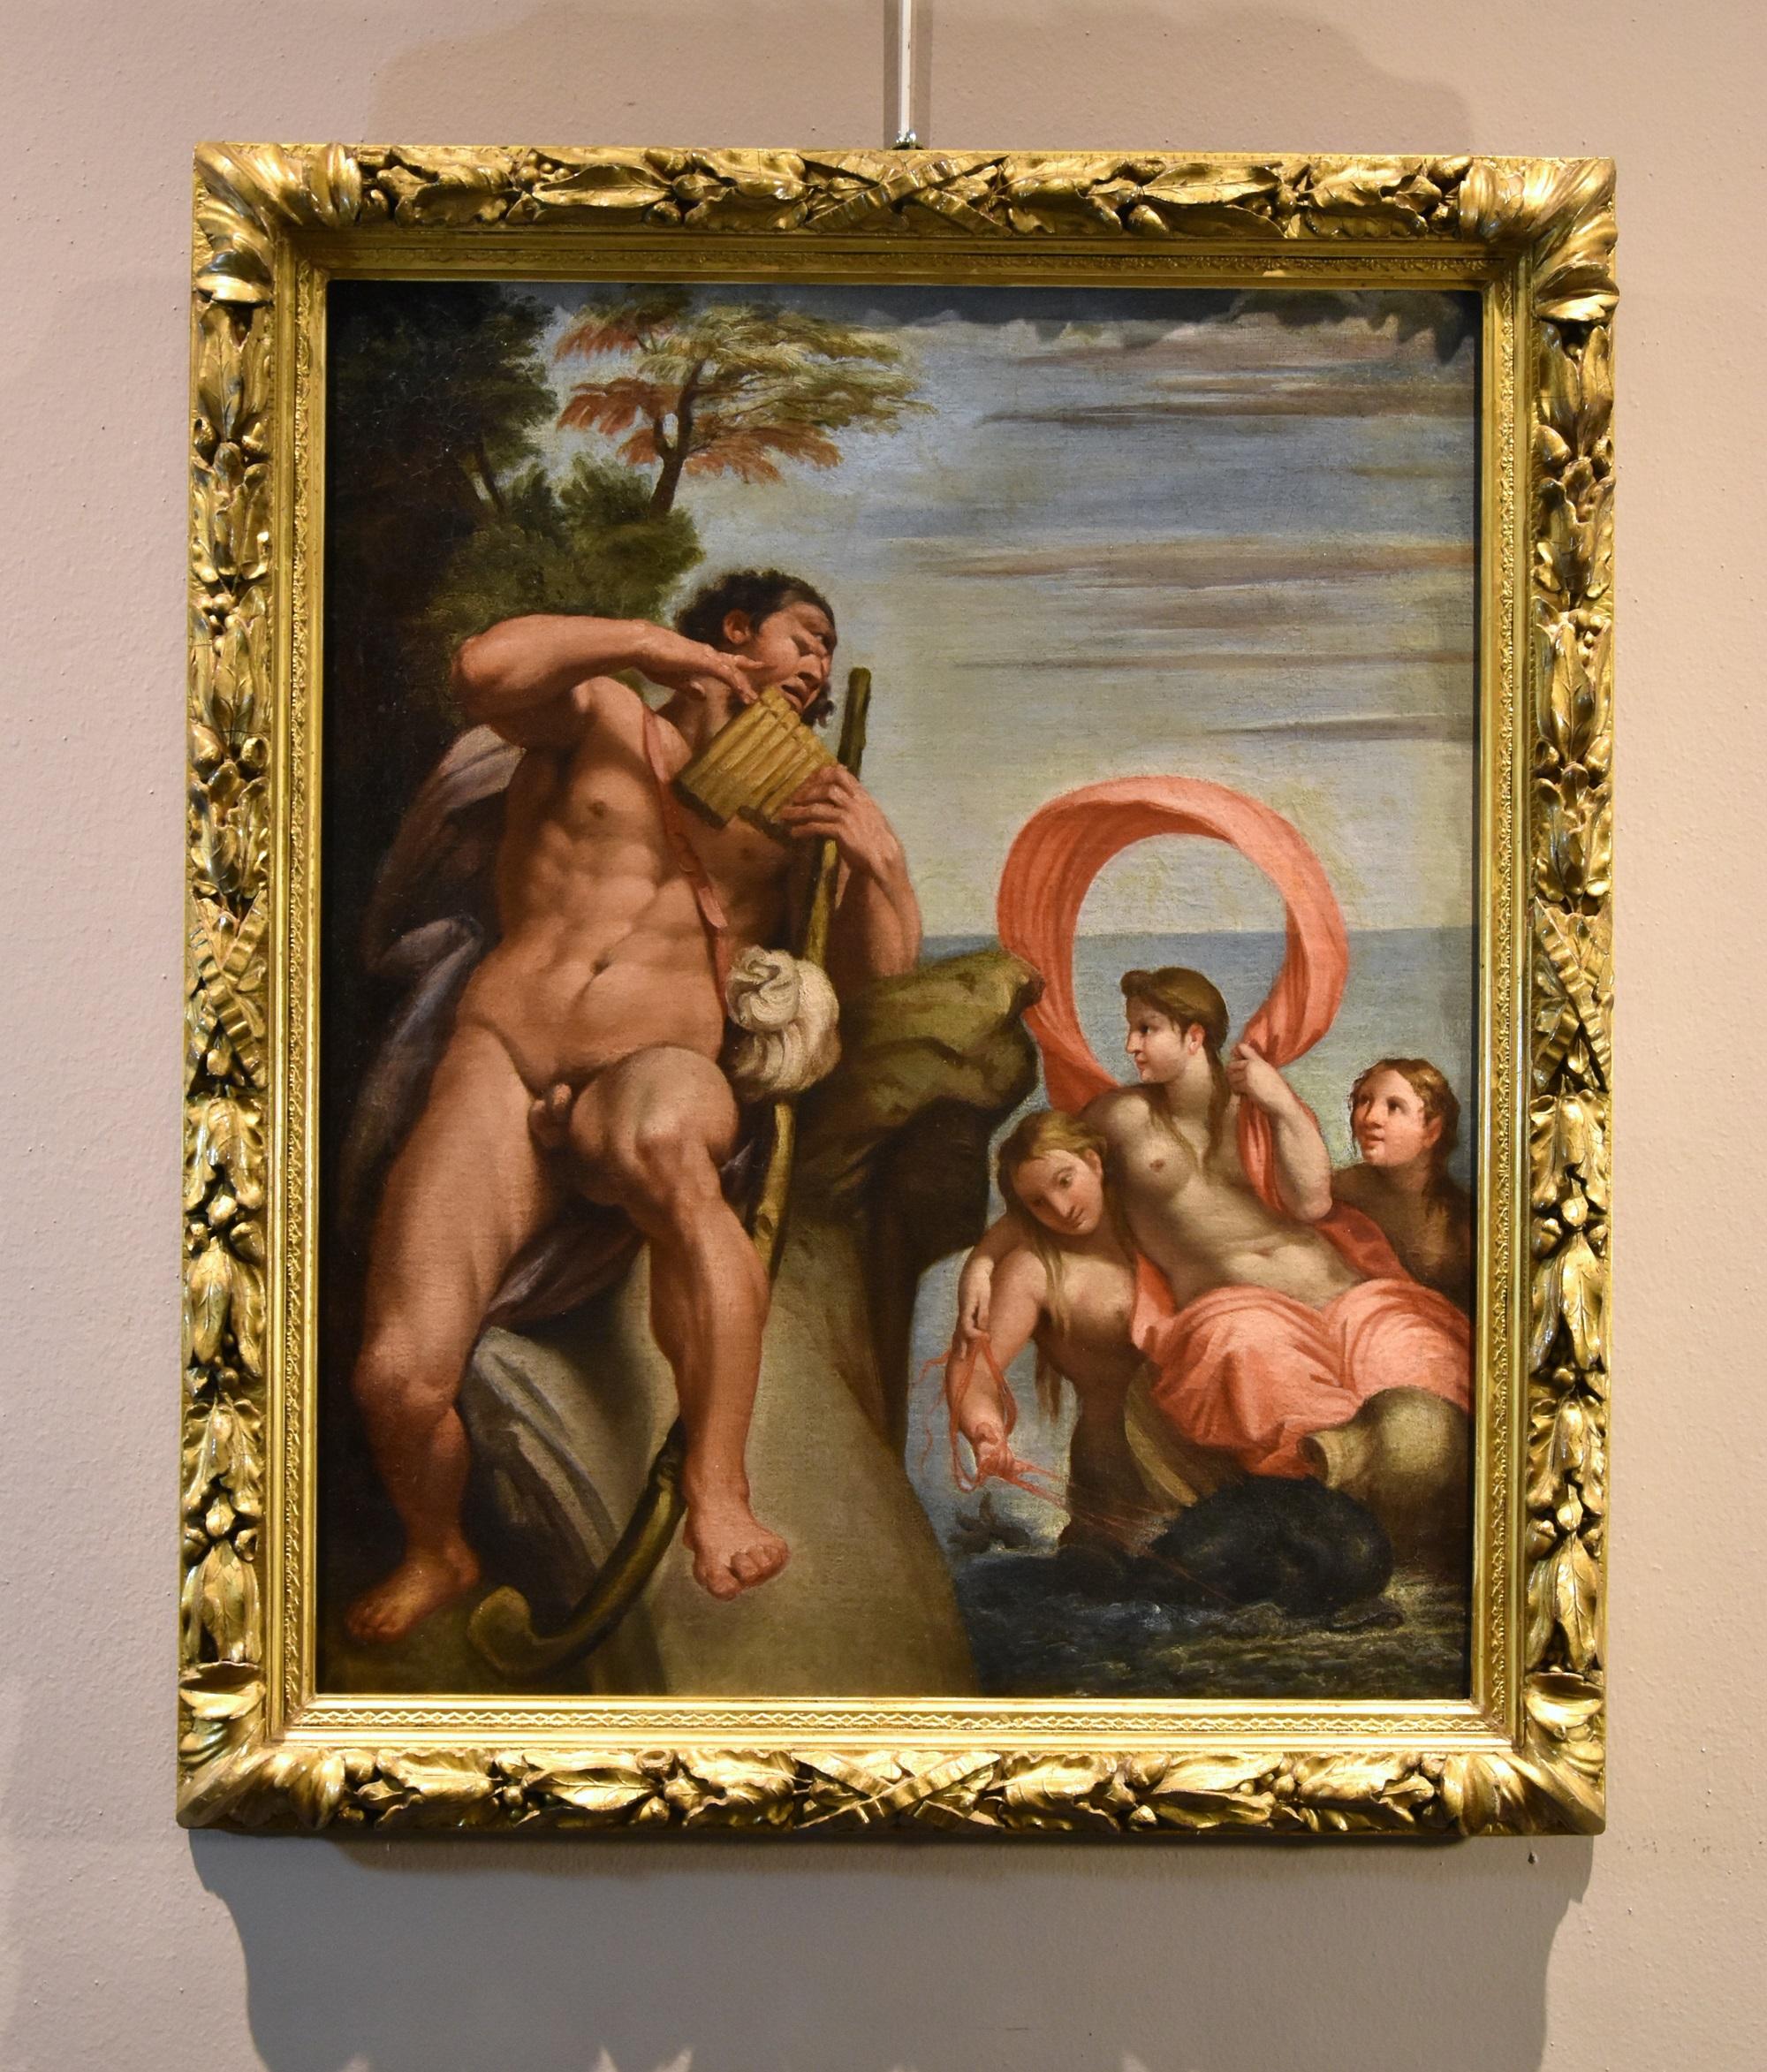 Peinture de Galatea Carracci du 17ème siècle huile sur toile Vieux maître Italie - Maîtres anciens Painting par Annibale Carracci (bologna, 1560 - Rome, 1609)